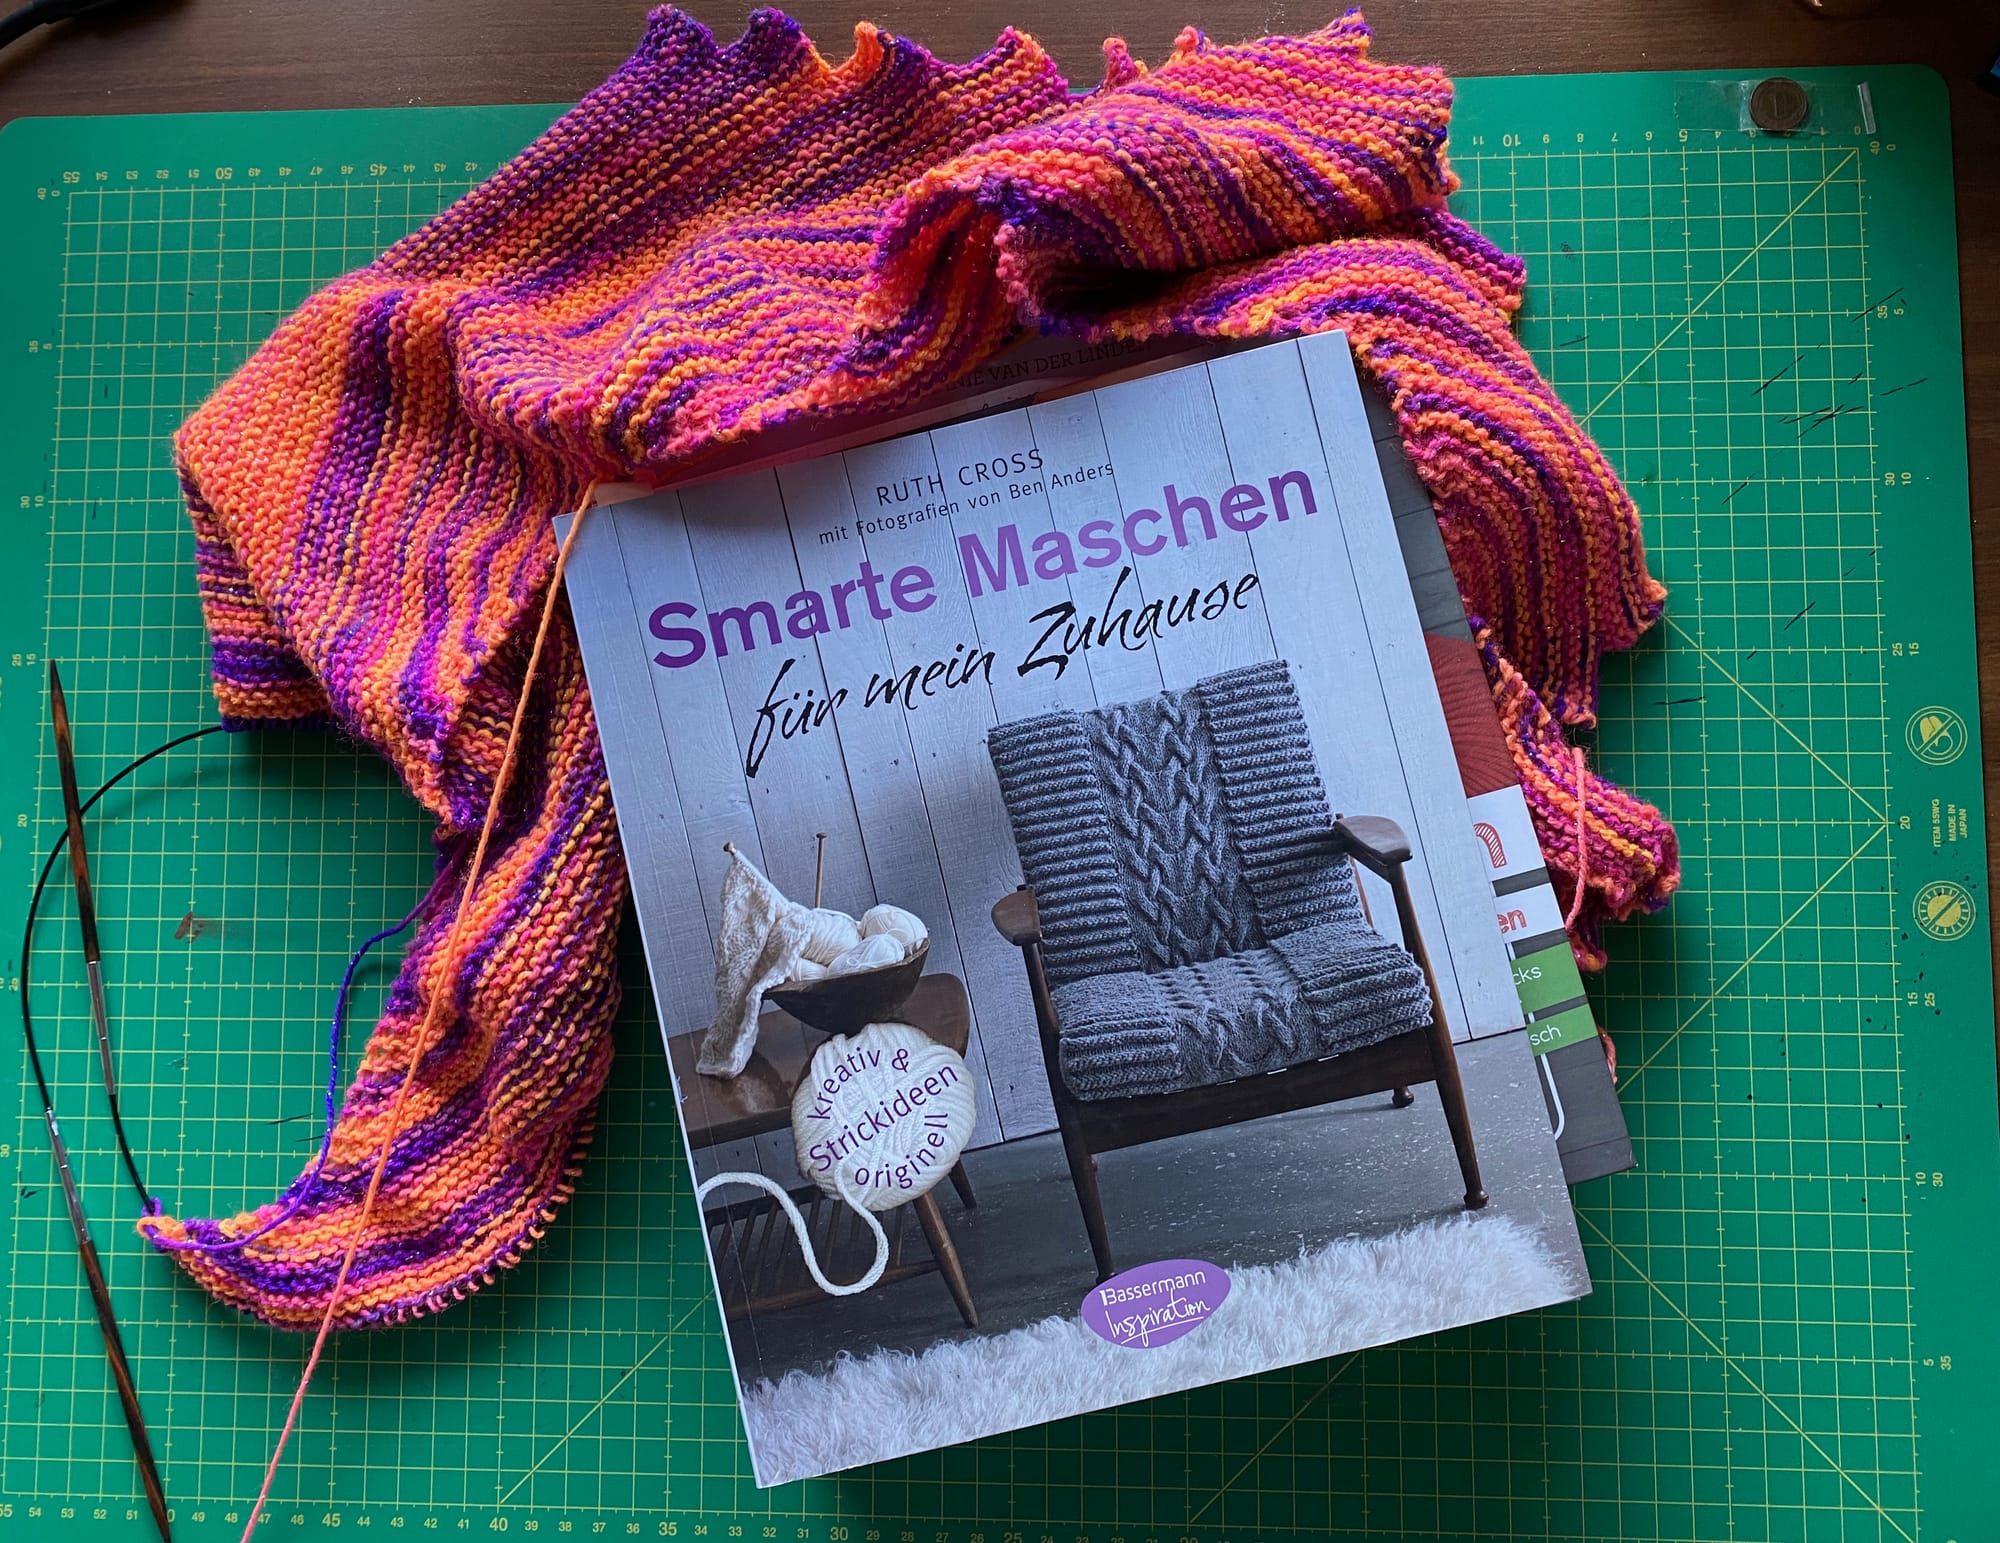 Ein Buch von oben fotografiert. Das Buch liegt auf einer Schneidematte und als Deko wurde ein gestrickter Schal um das Buch drapiert. Der Titel des Buches ist "Smarte Maschen für mein Zuhause"